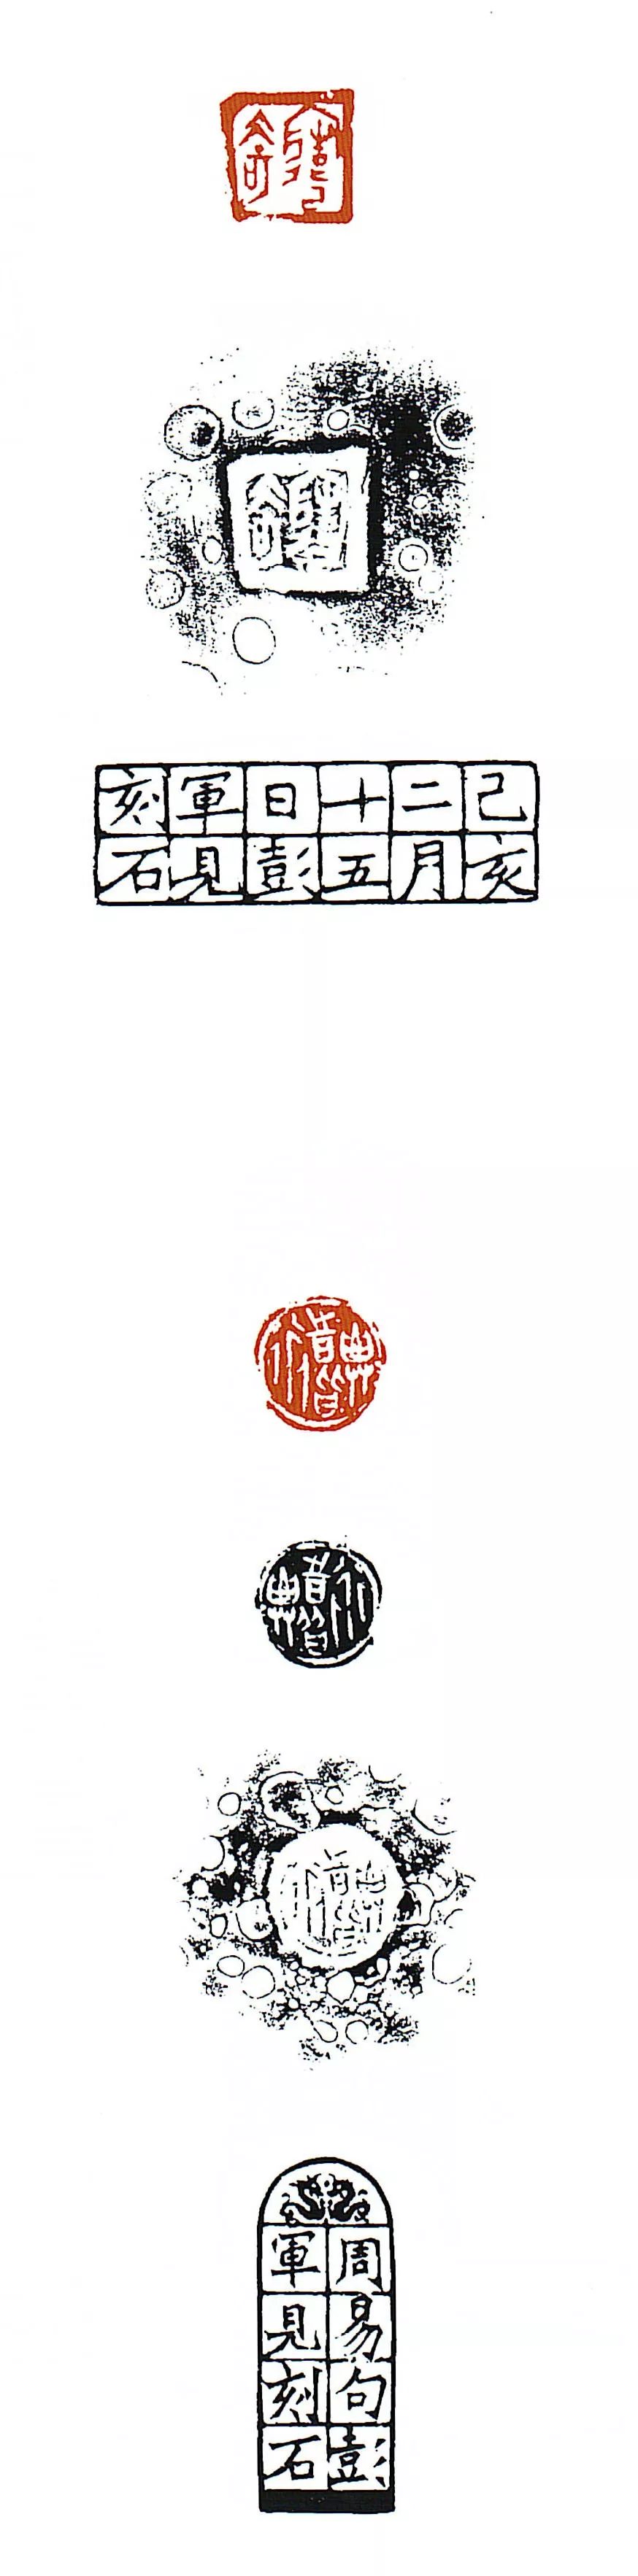 全国第十二届书法篆刻展览安徽入展作品赏析（四）(图49)